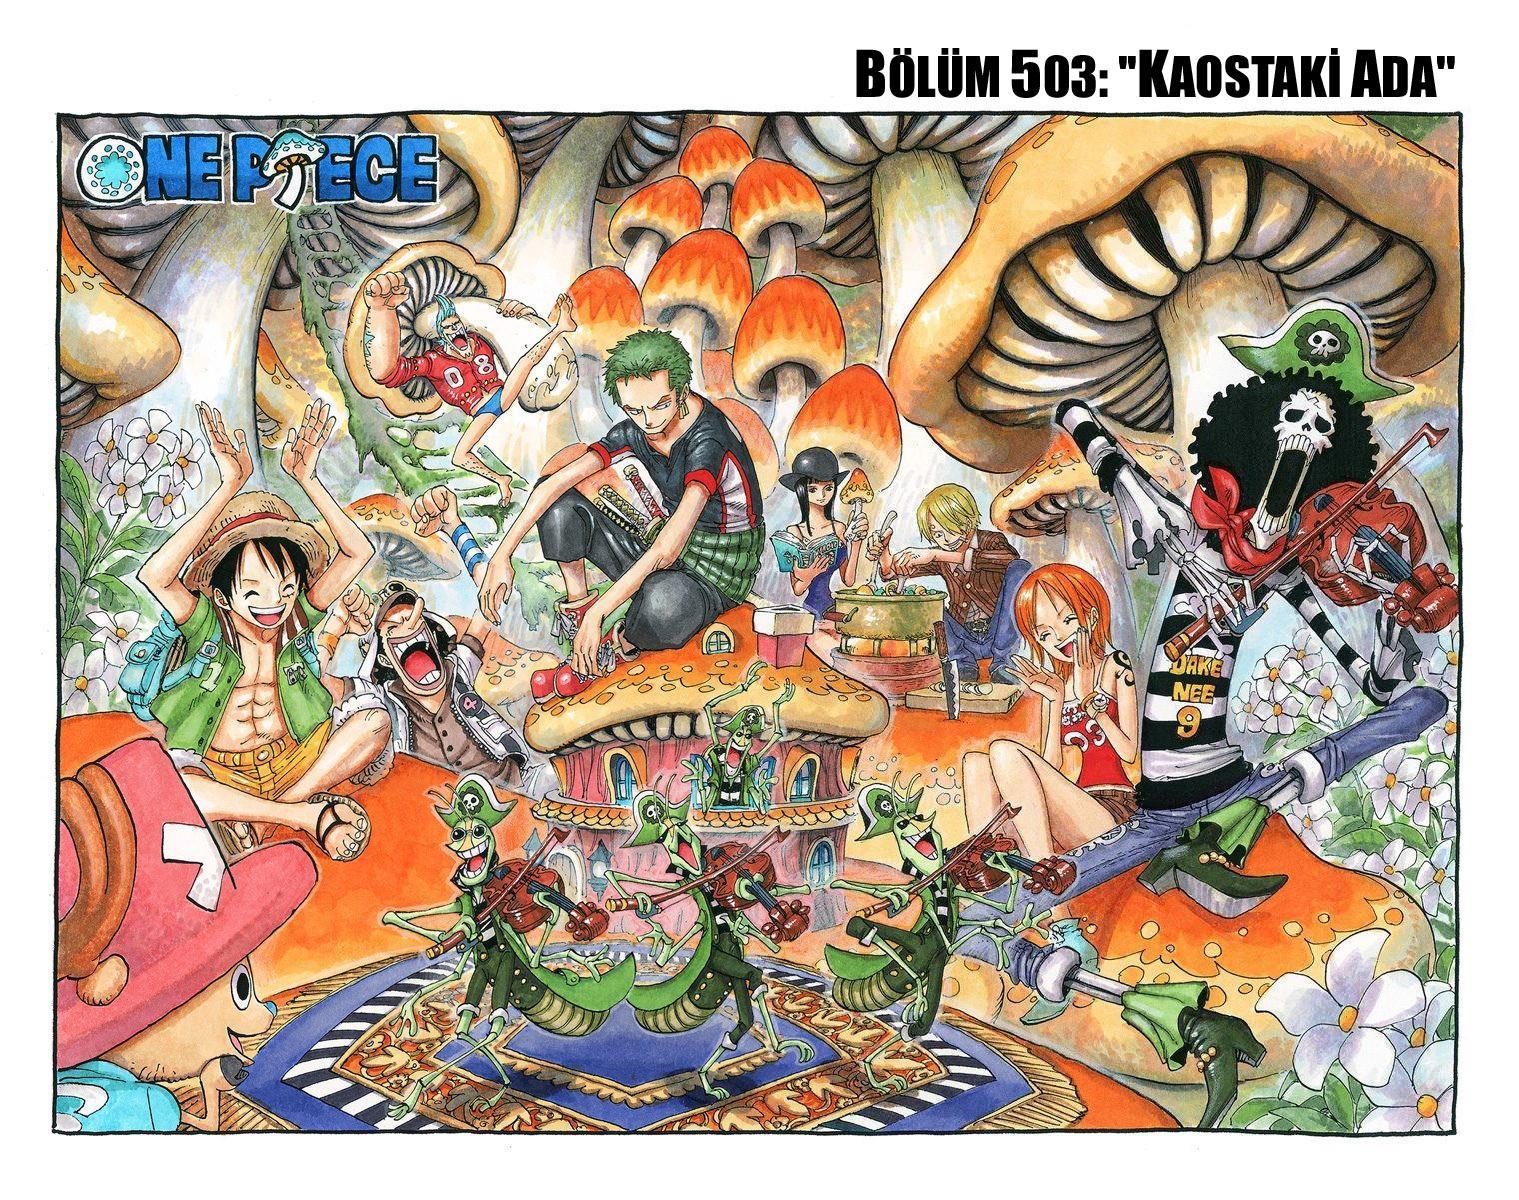 One Piece [Renkli] mangasının 0503 bölümünün 2. sayfasını okuyorsunuz.